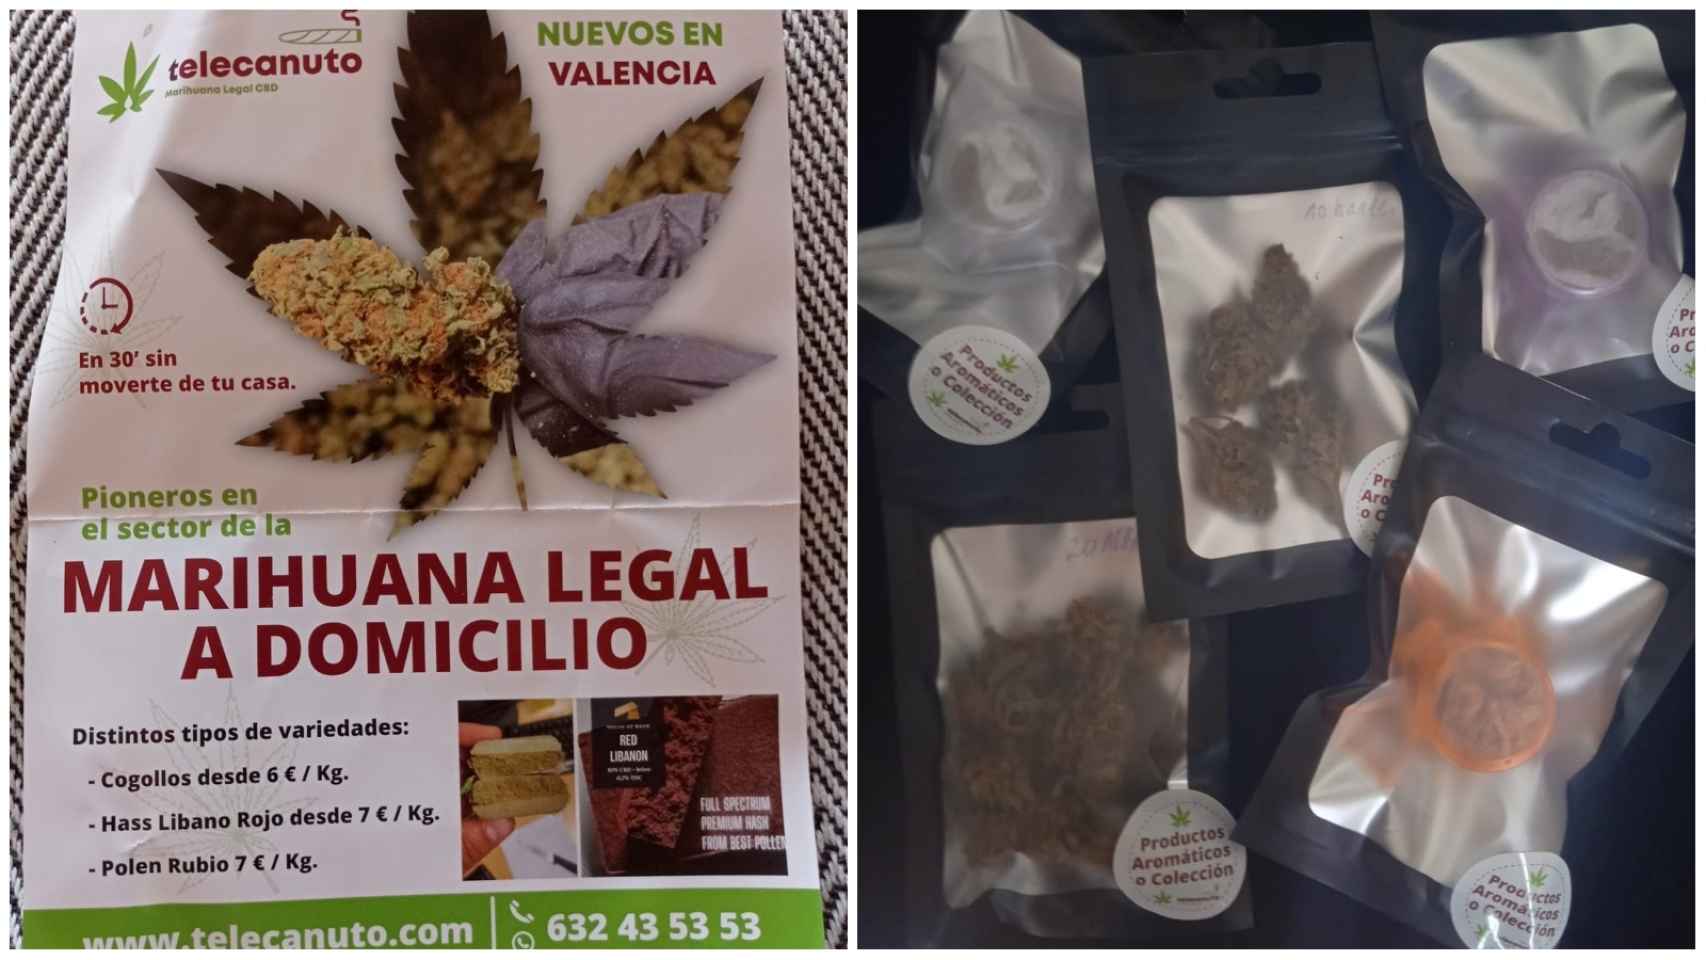 Publicidad y productos de Telecanuto, la empresa que envía en Valencia marihuana legal a domicilio. EE